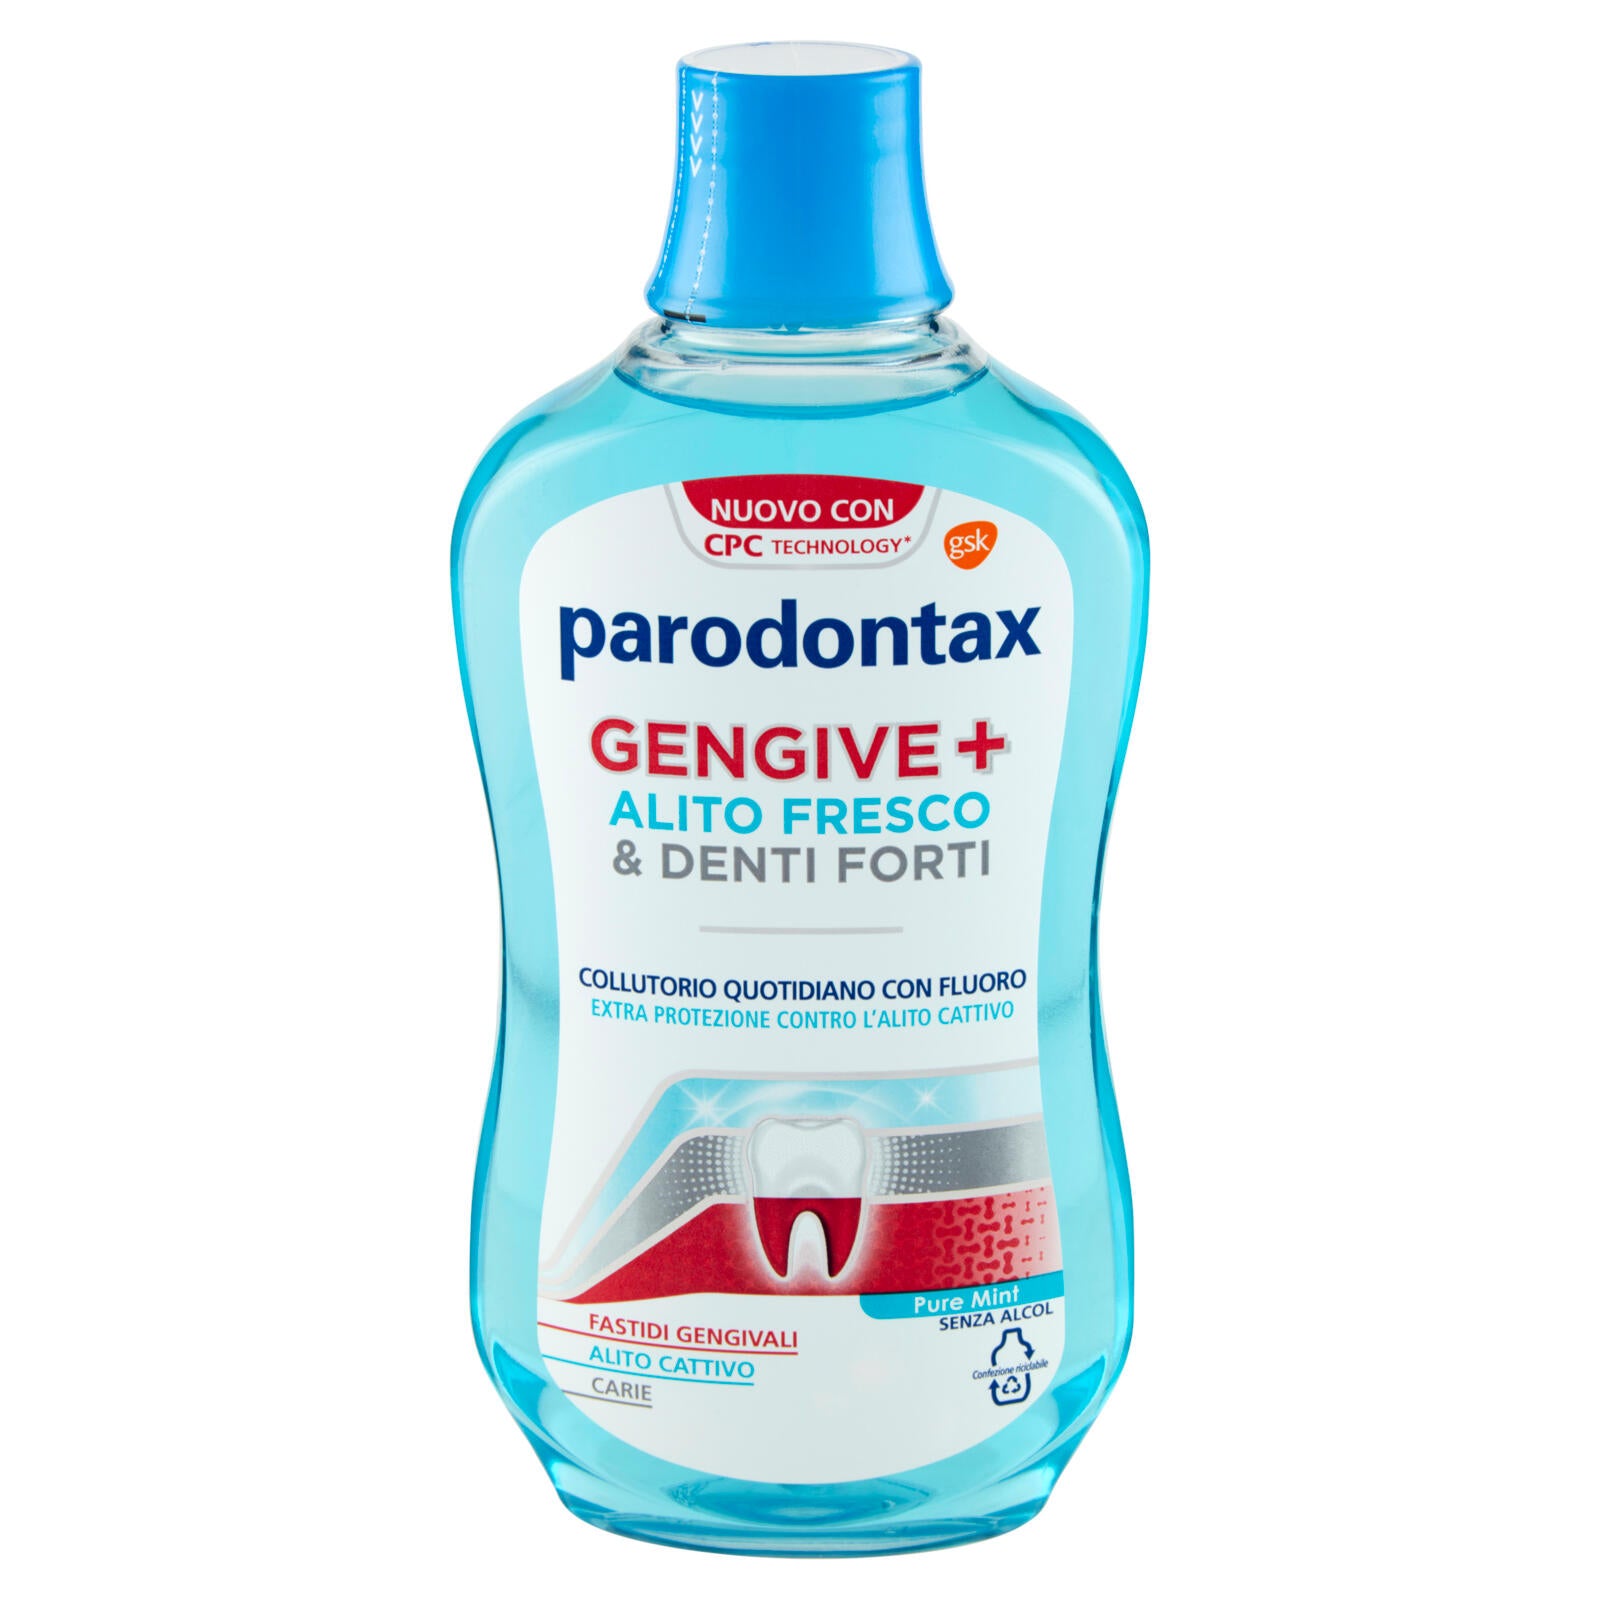 Parodontax Collutorio Gengive+ Alito Fresco & Denti Forti contro Fastidi Gengivali Carie 500 ml